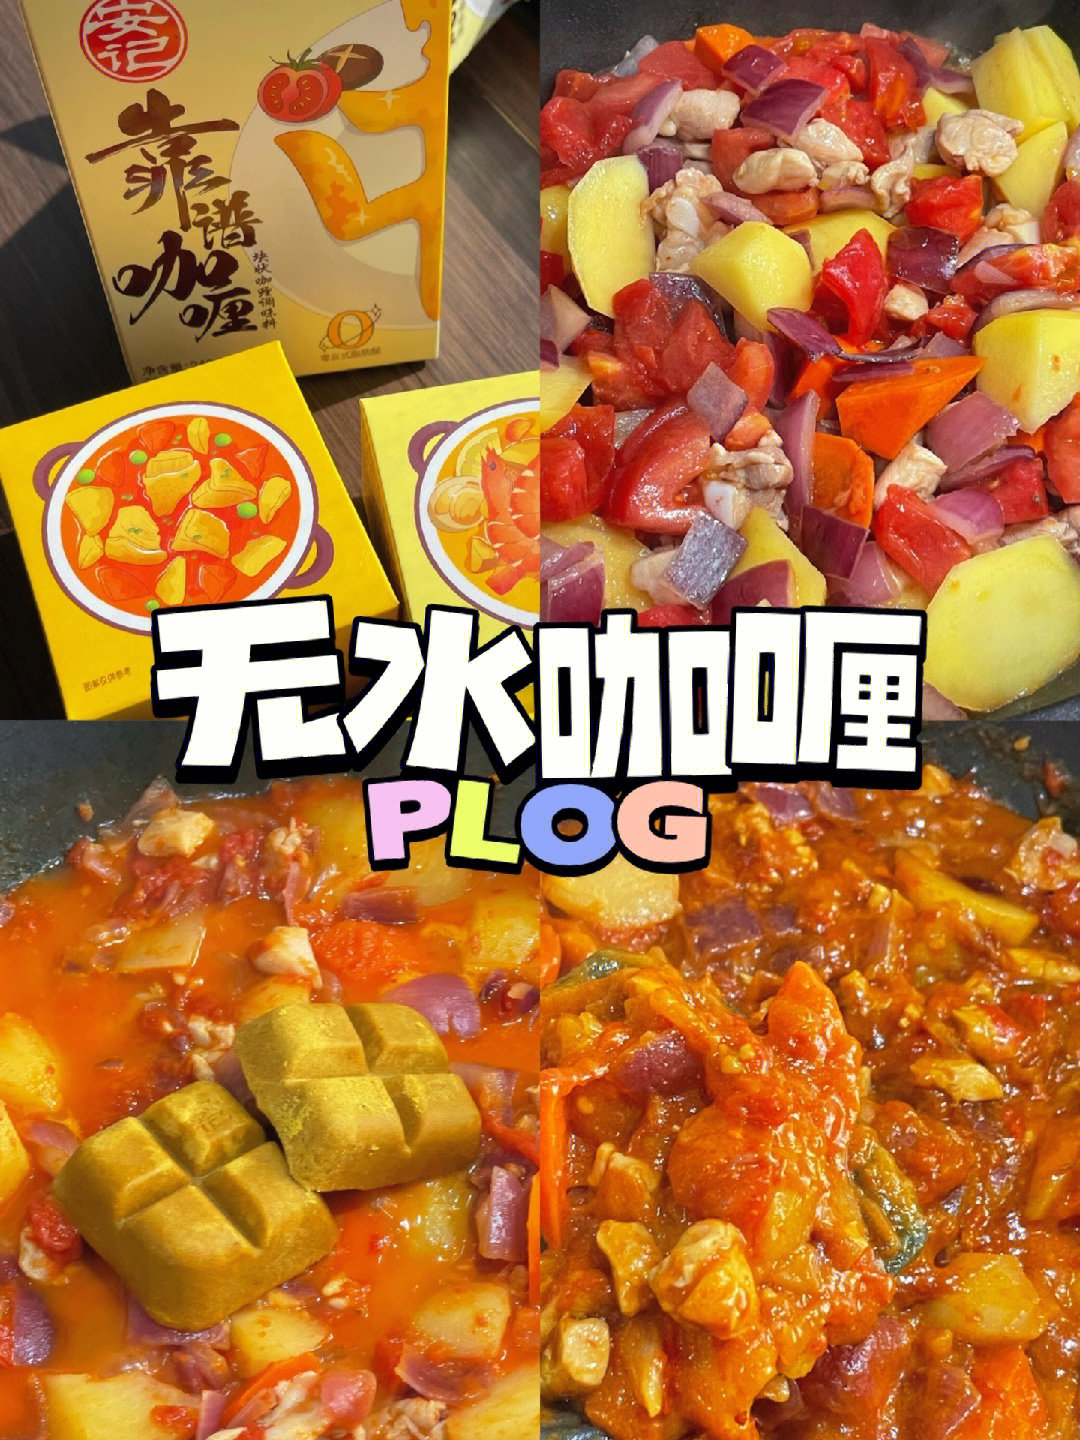 『食材』:鸡腿肉,土豆,洋葱,胡萝卜,蘑菇(我没放),四个番茄,咖喱